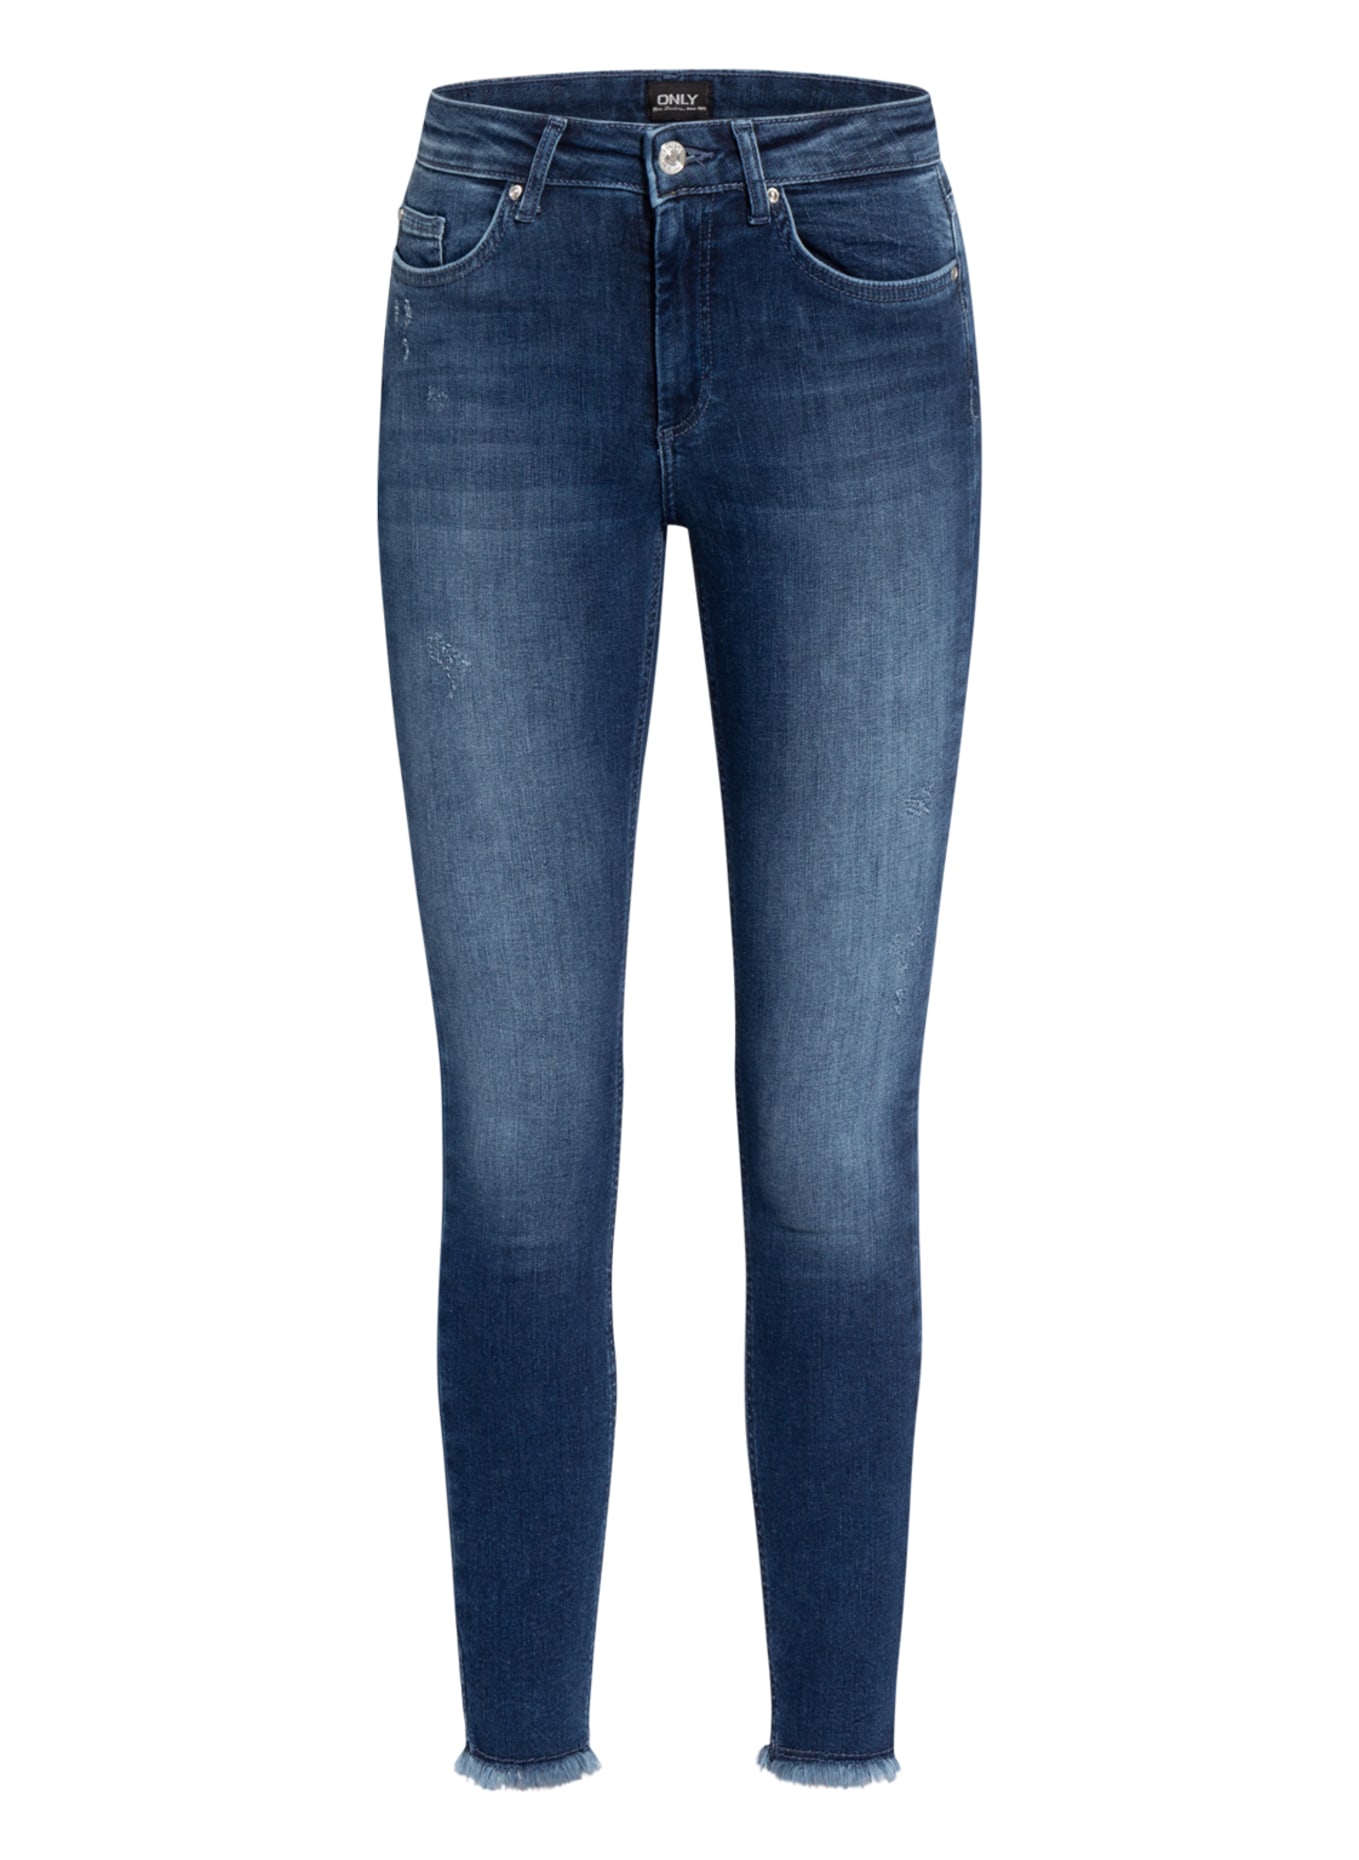 ONLY Skinny jeans, Color: DARK BLUE DENIM (Image 1)